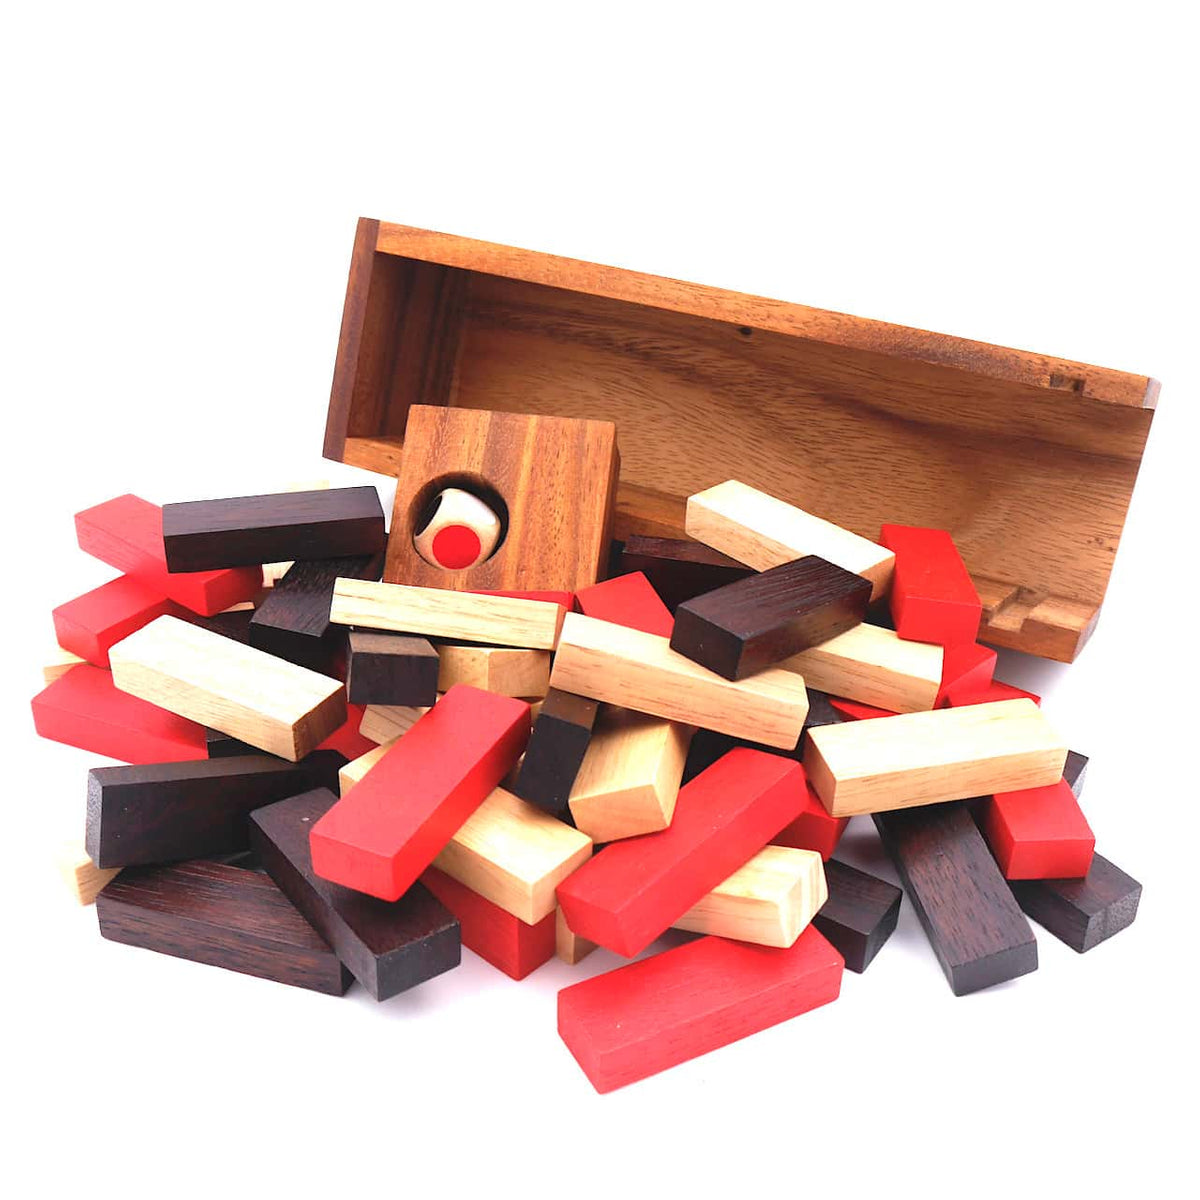 Ein Stapelspiel mit Holzblöcken, bei dem die Holzsteine durcheinander vor der Holzbox liegen.